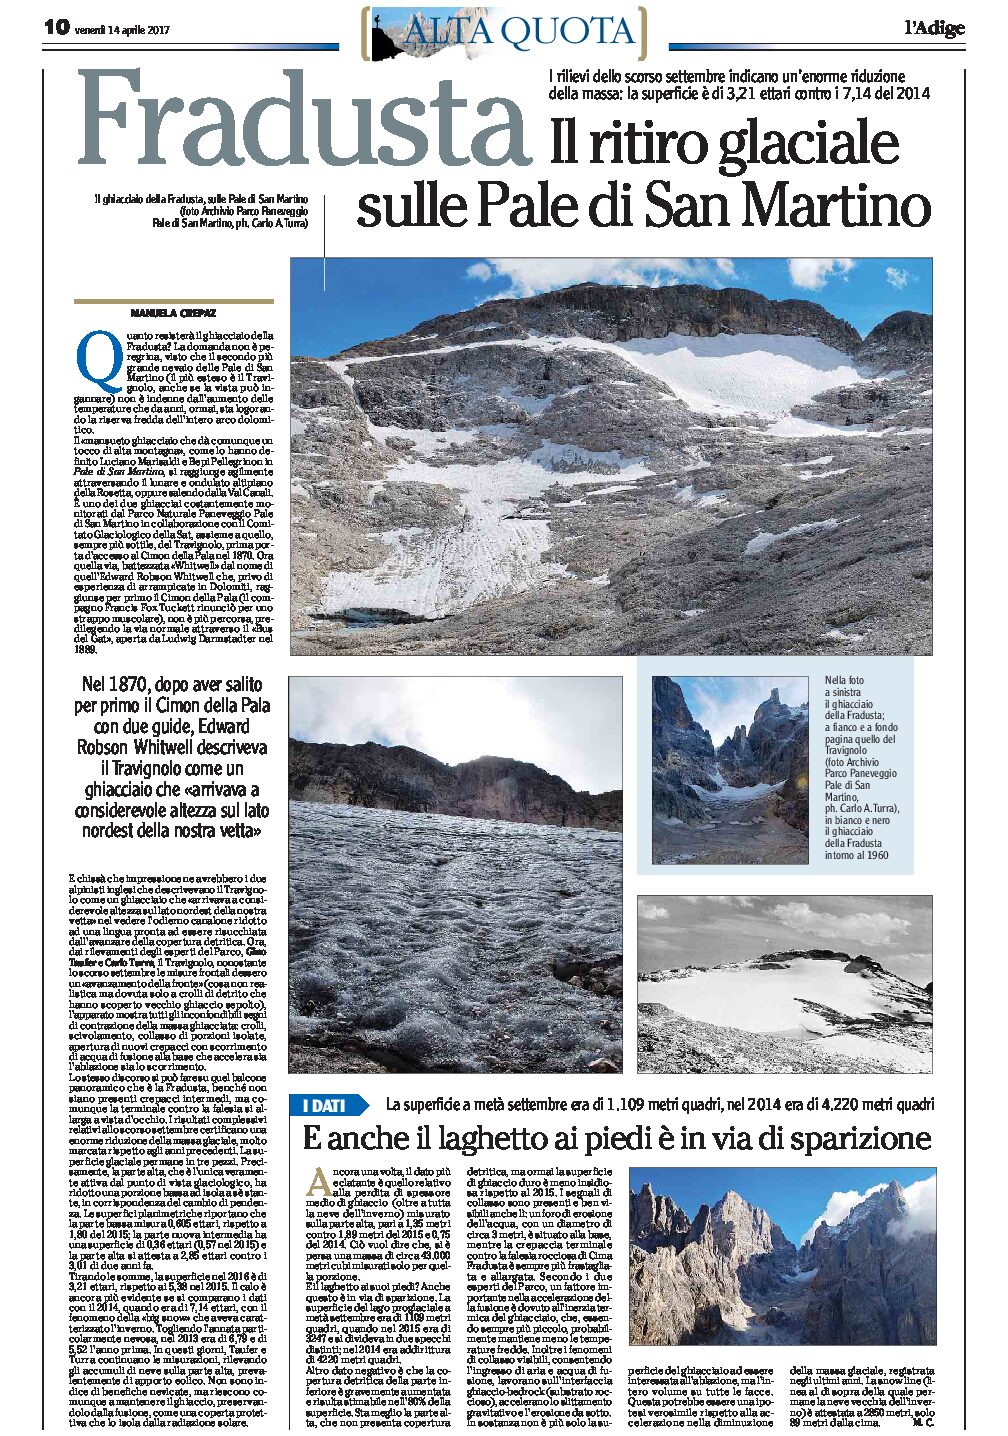 Fradusta: il ritiro glaciale sulle Pale di San Martino. Una riduzione enorme